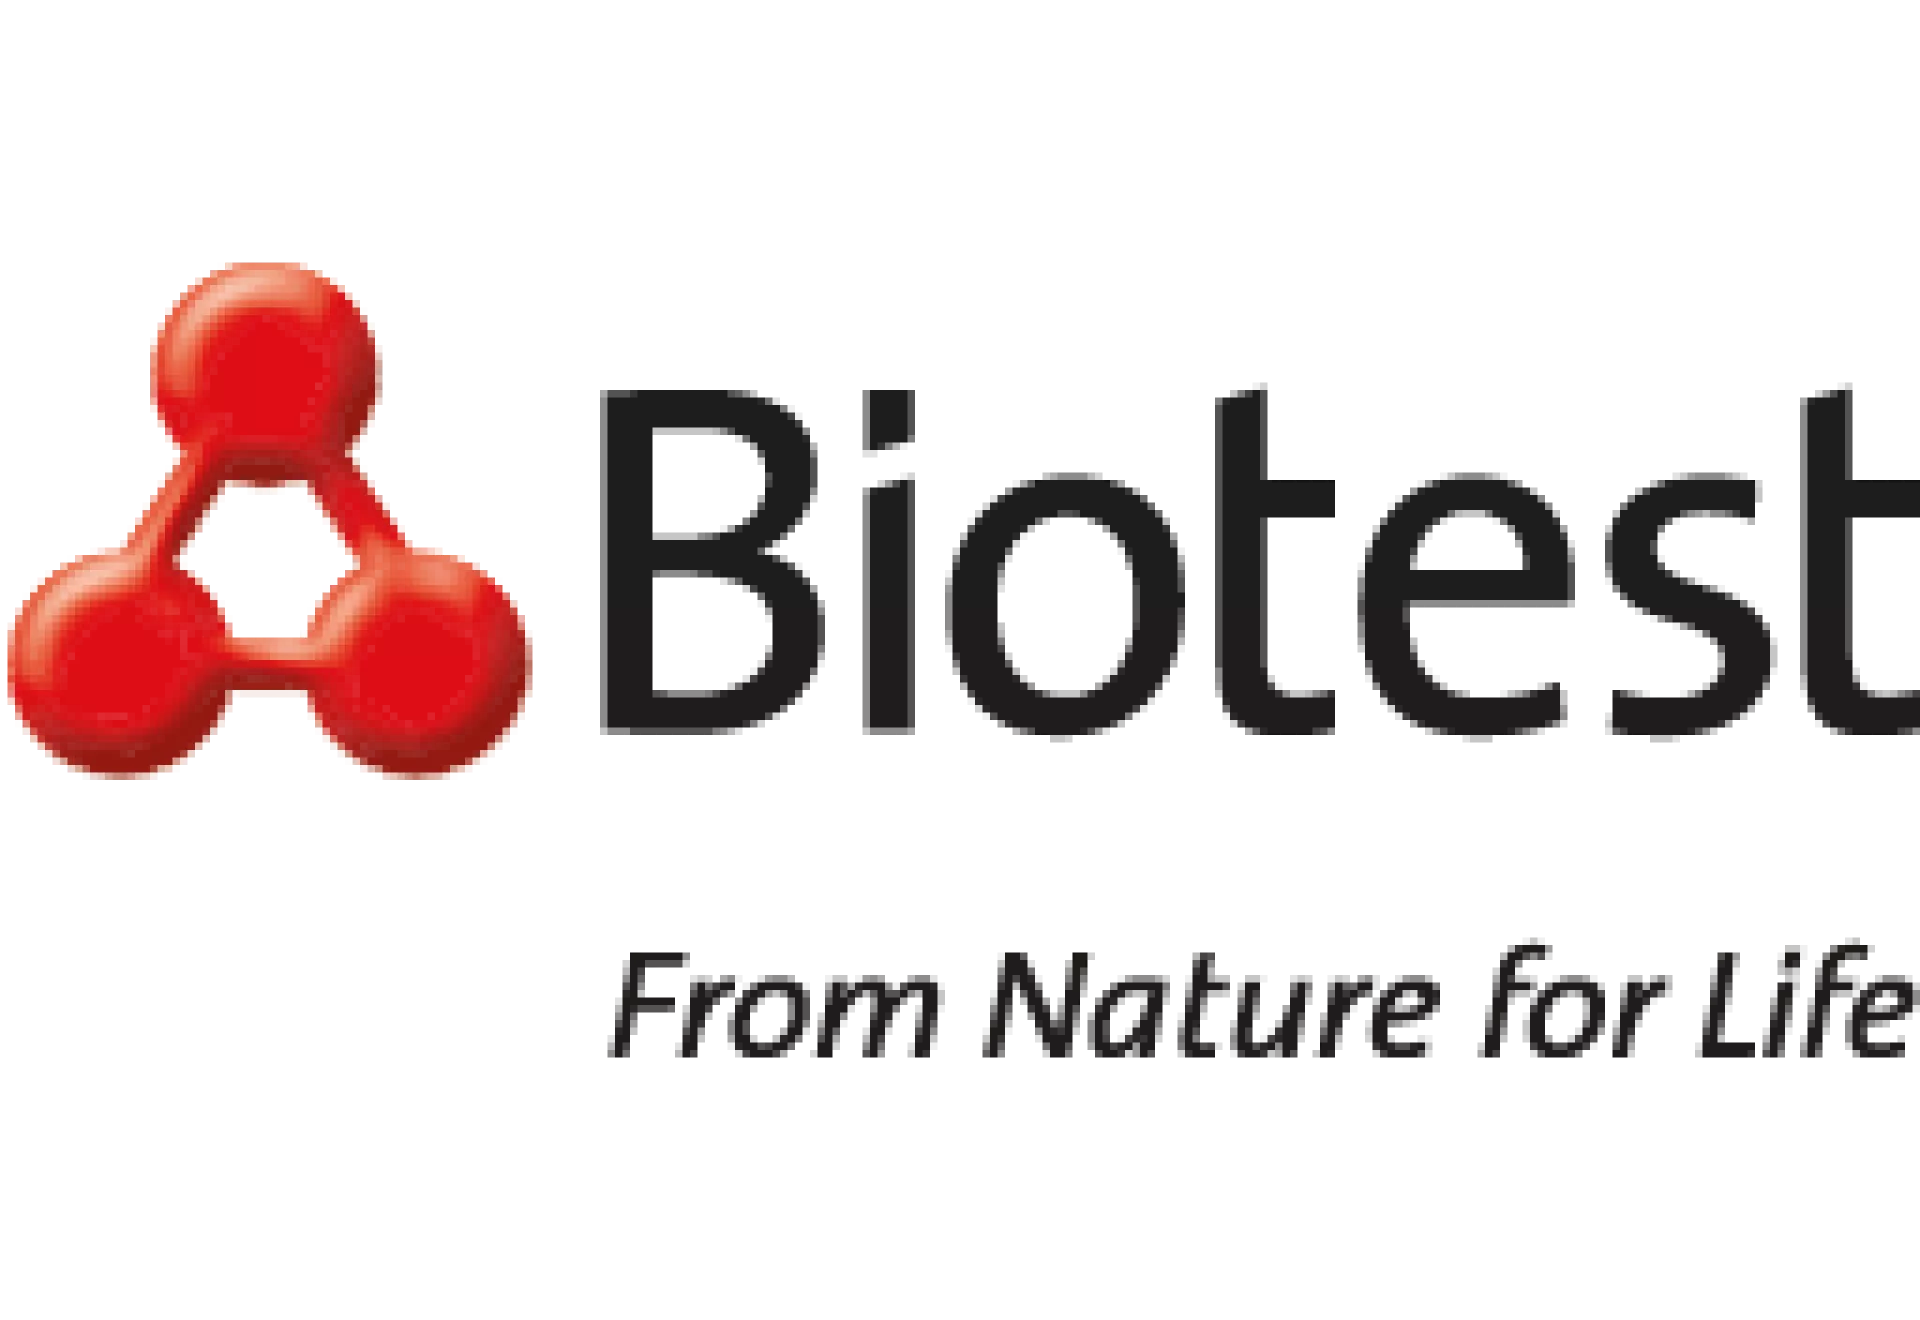 Logo Biotest